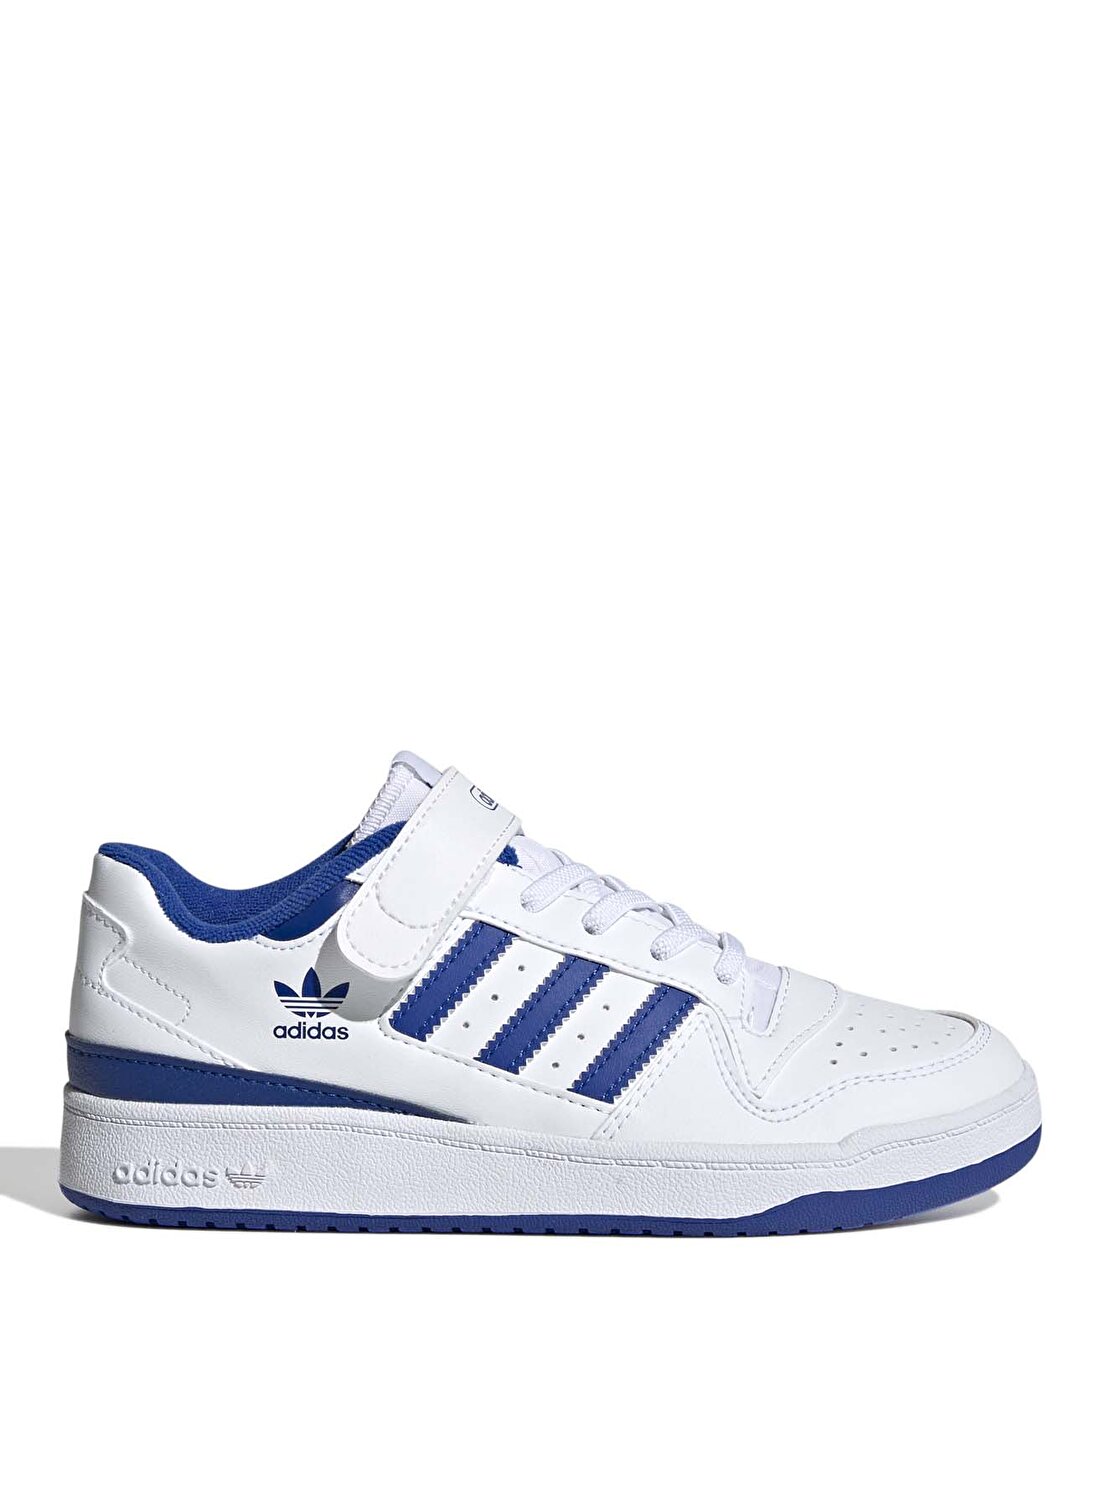 adidas Beyaz - Mavi Erkek Çocuk Yürüyüş Ayakkabısı FY7978 FORUM LOW C 